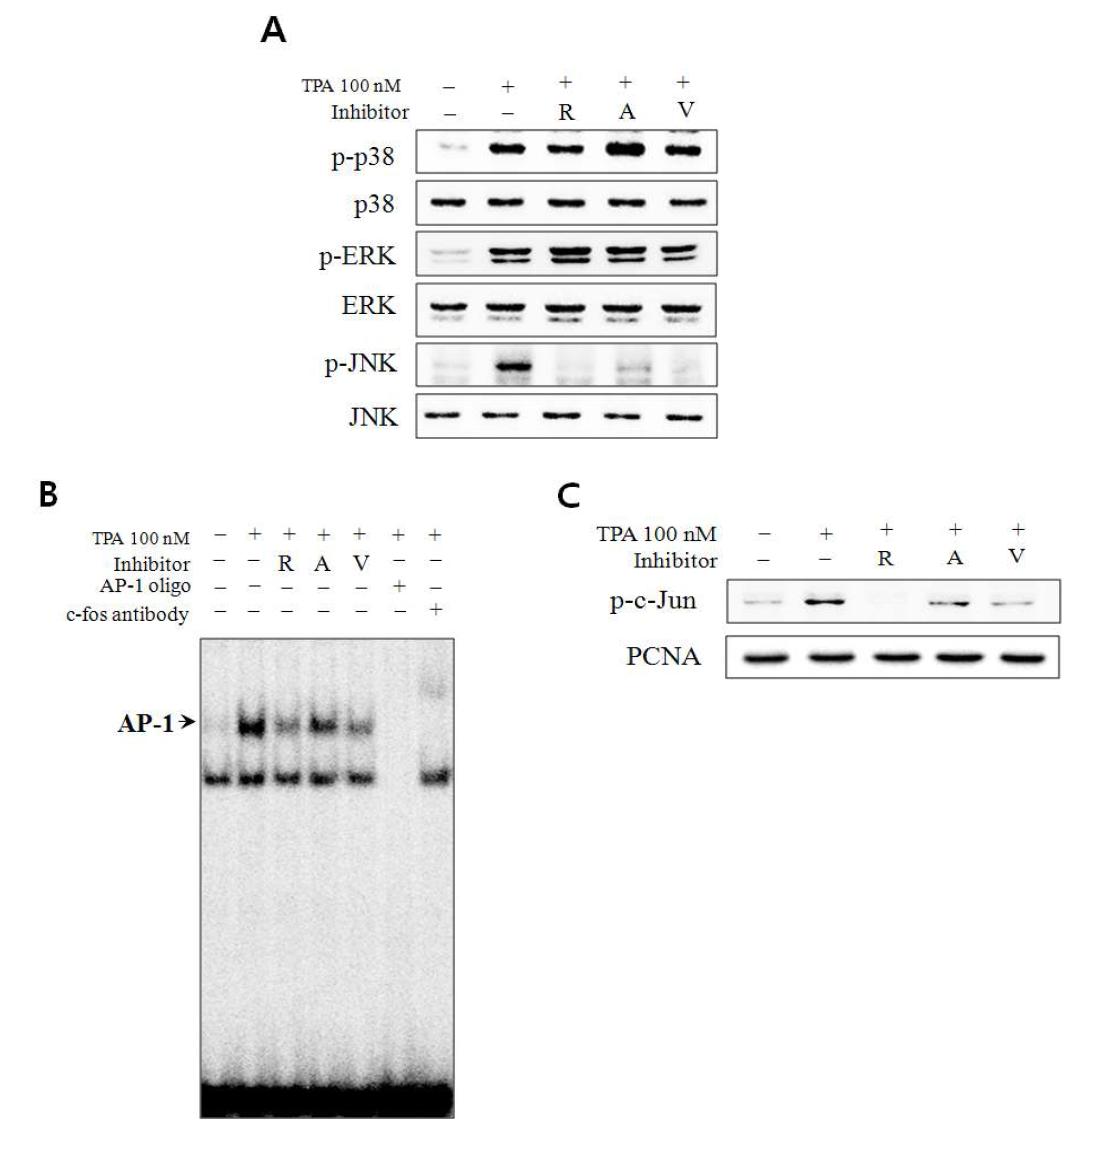 다양한 Aurora kinase 억제제에 의한 AP-1 활성 억제 효과